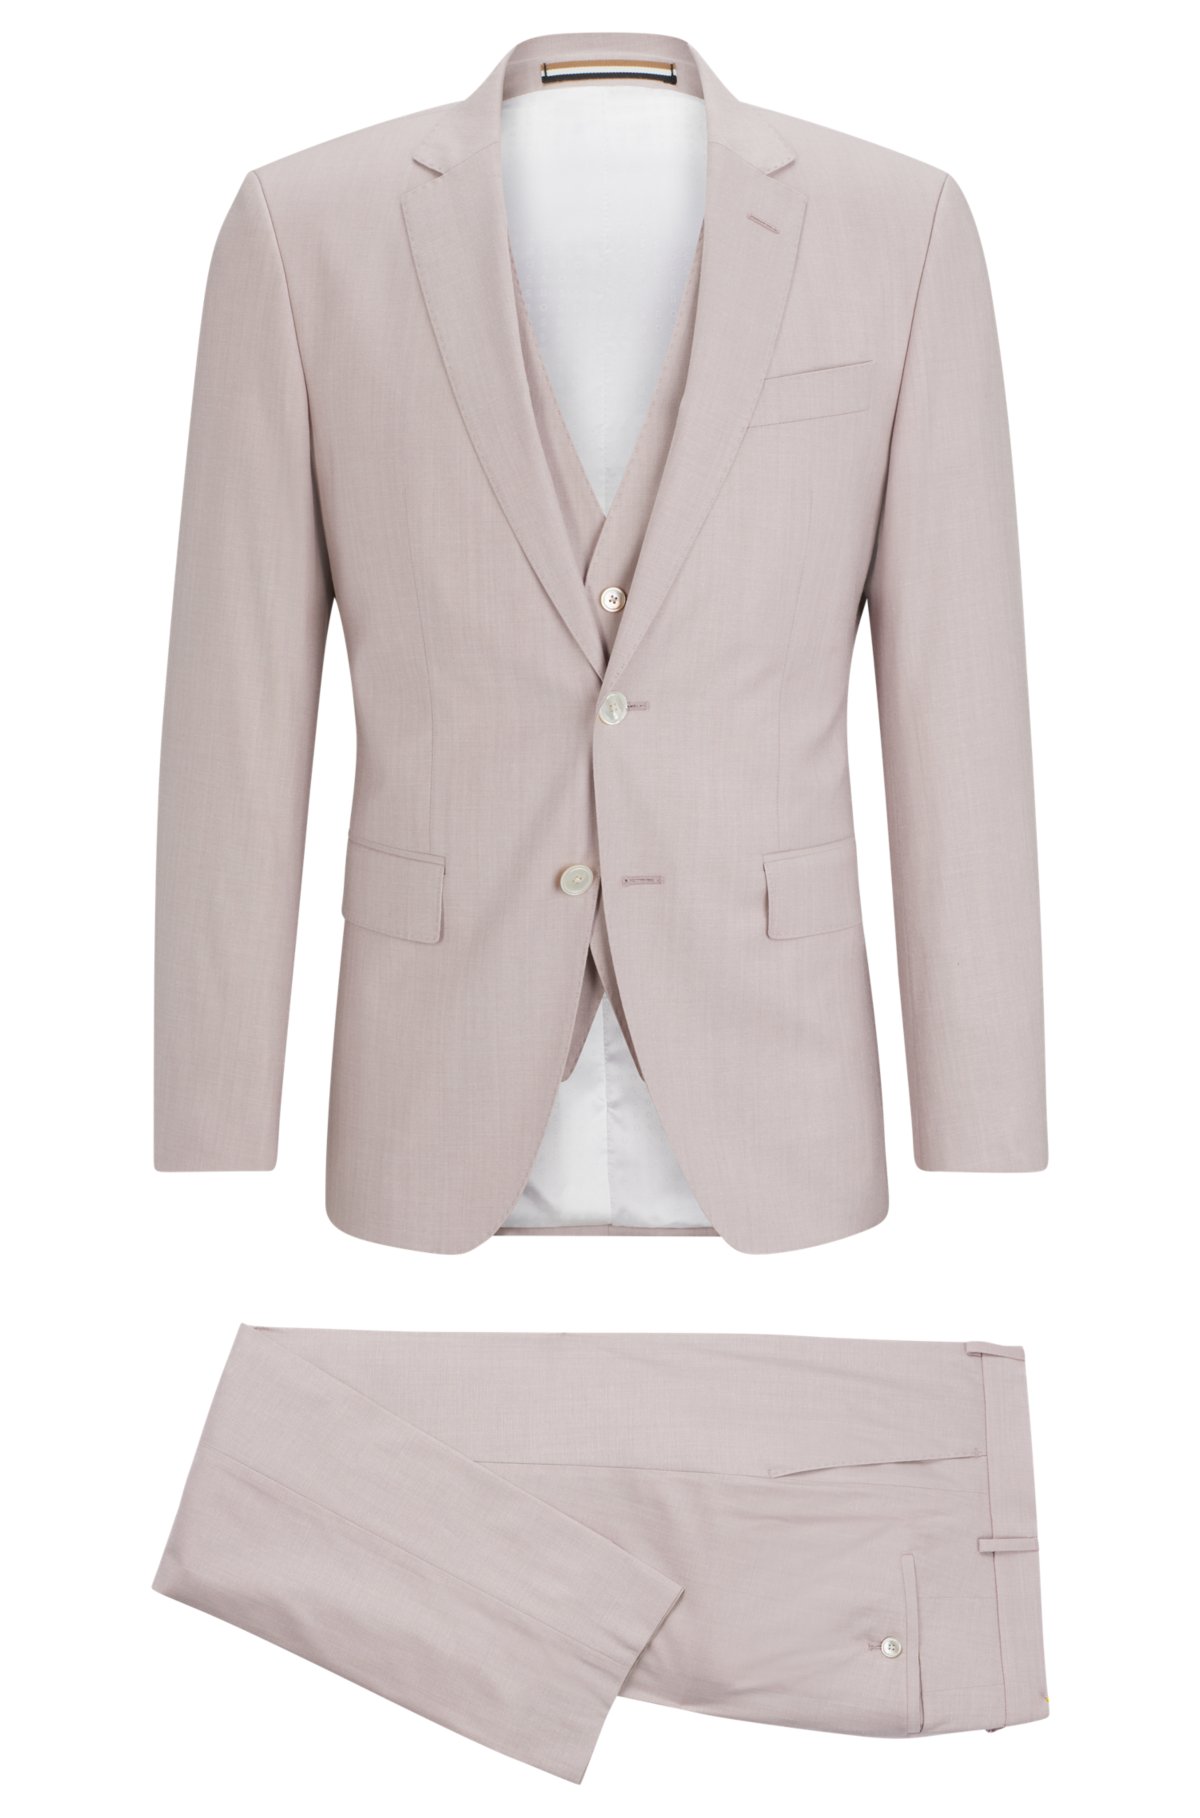 Slim-fit suit in a melange wool blend, light pink